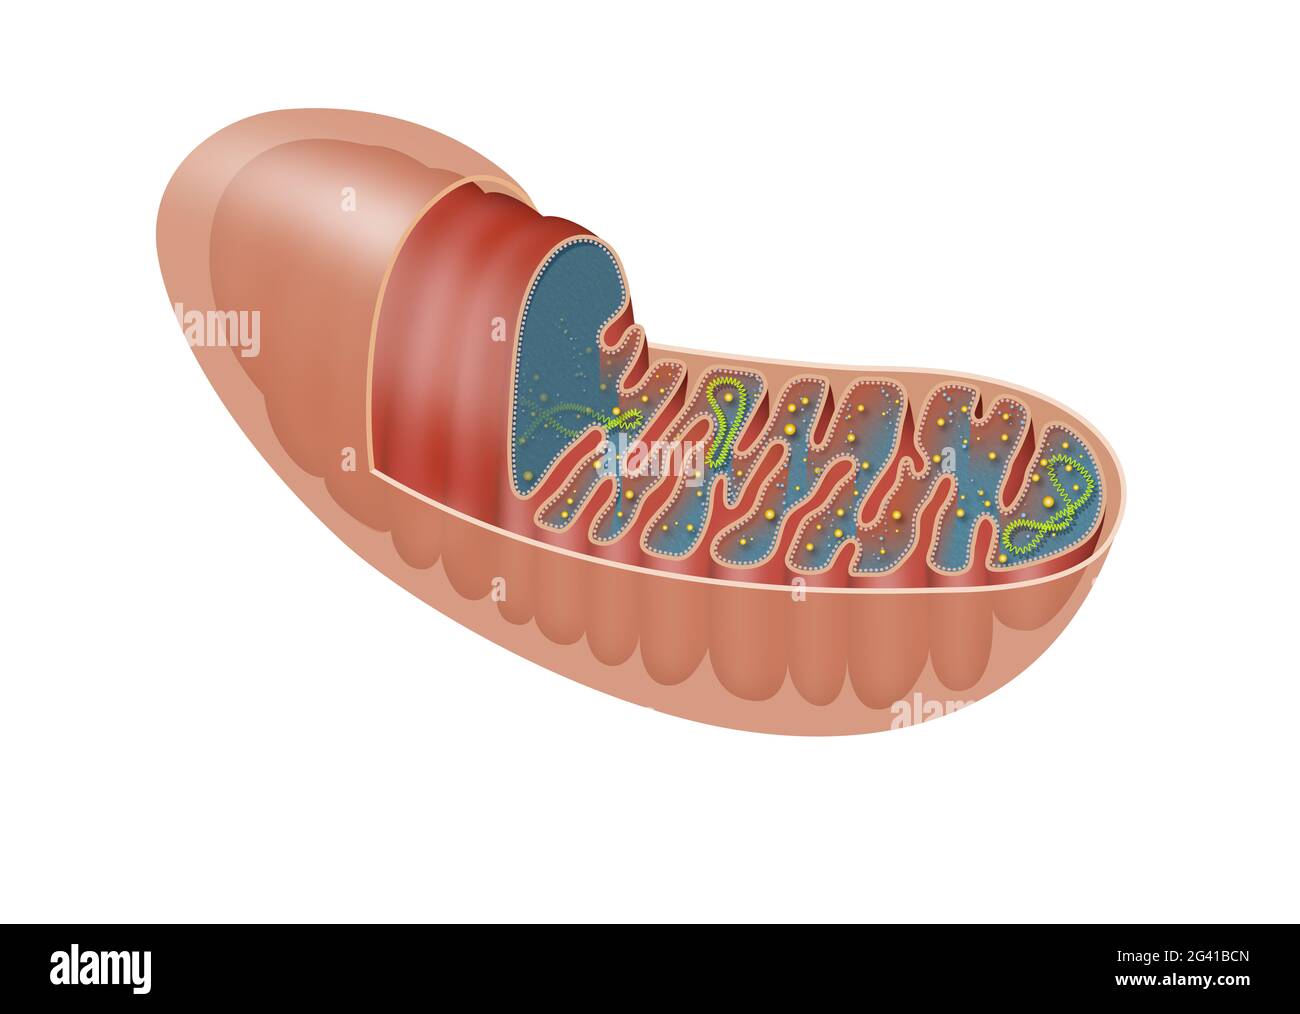 La mitocondria es un organelle de doble membrana que se encuentra en la mayoría de los organismos eucarióticos Foto de stock